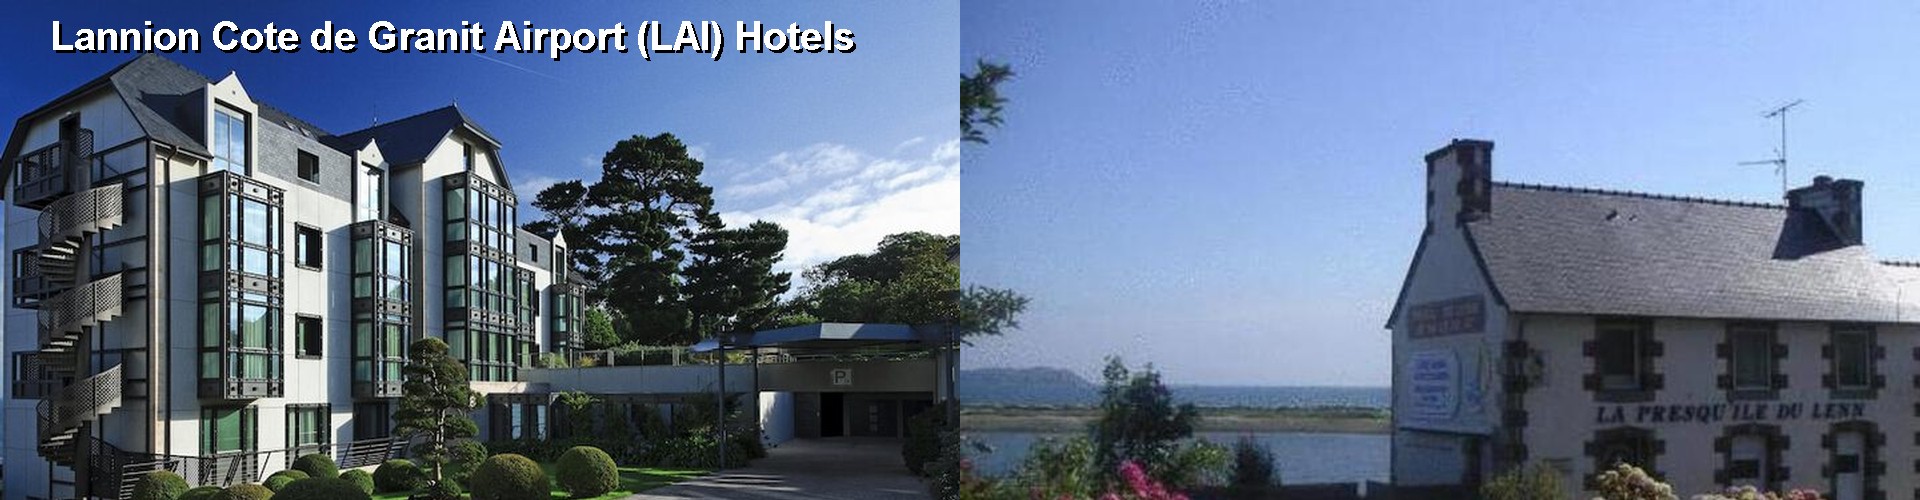 5 Best Hotels near Lannion Cote de Granit Airport (LAI)